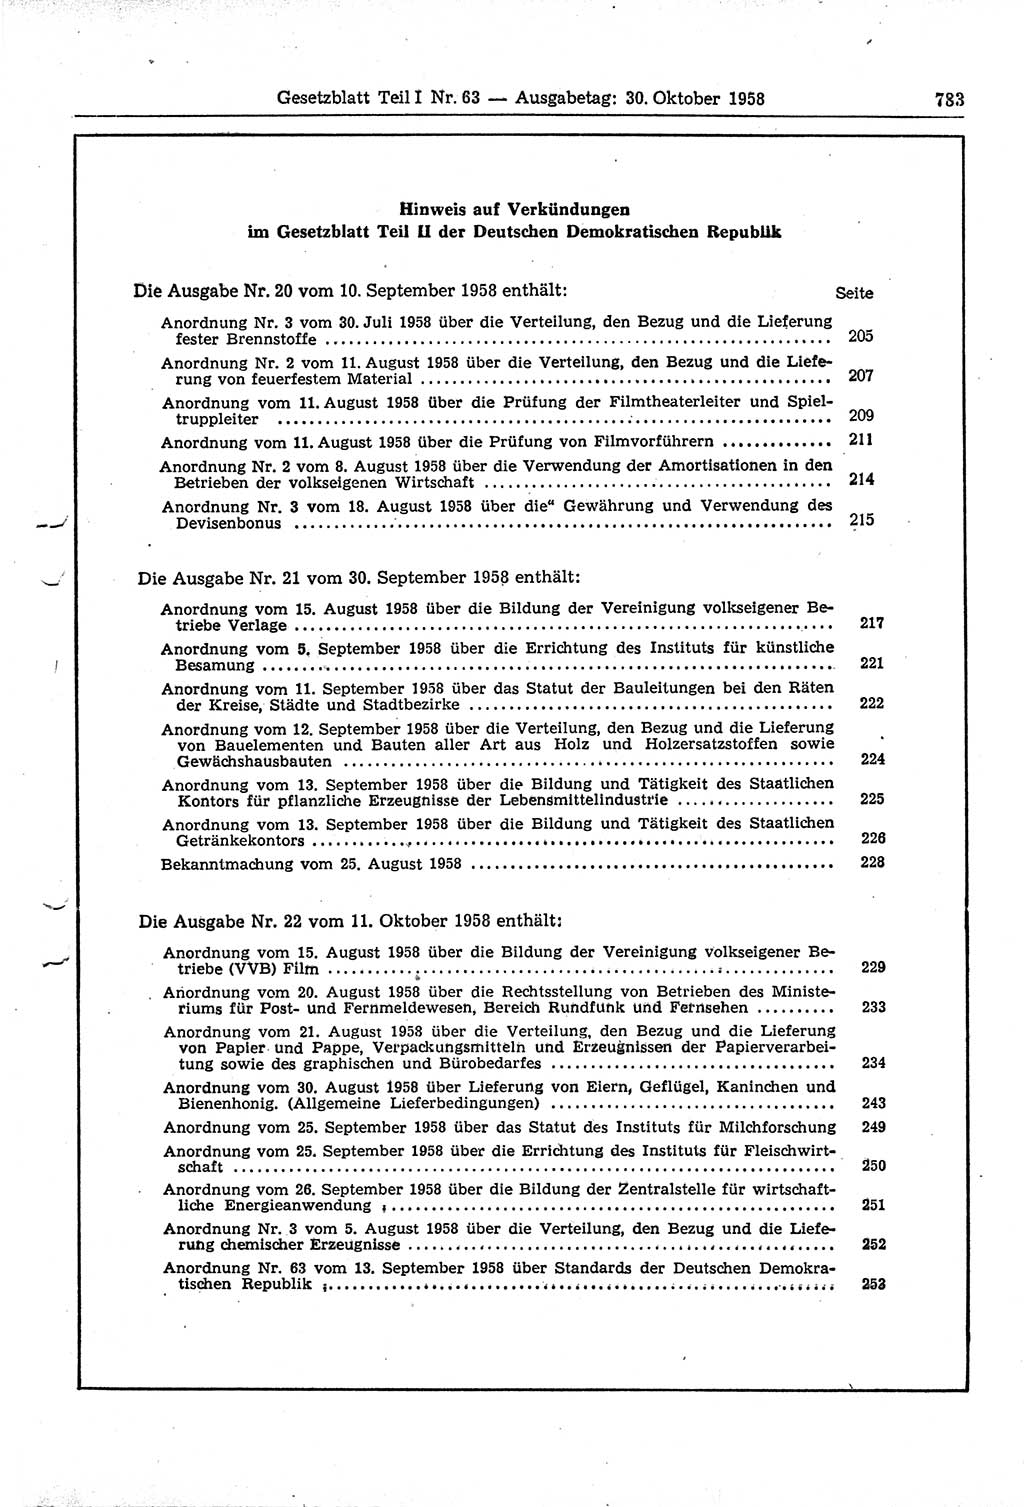 Gesetzblatt (GBl.) der Deutschen Demokratischen Republik (DDR) Teil Ⅰ 1958, Seite 783 (GBl. DDR Ⅰ 1958, S. 783)